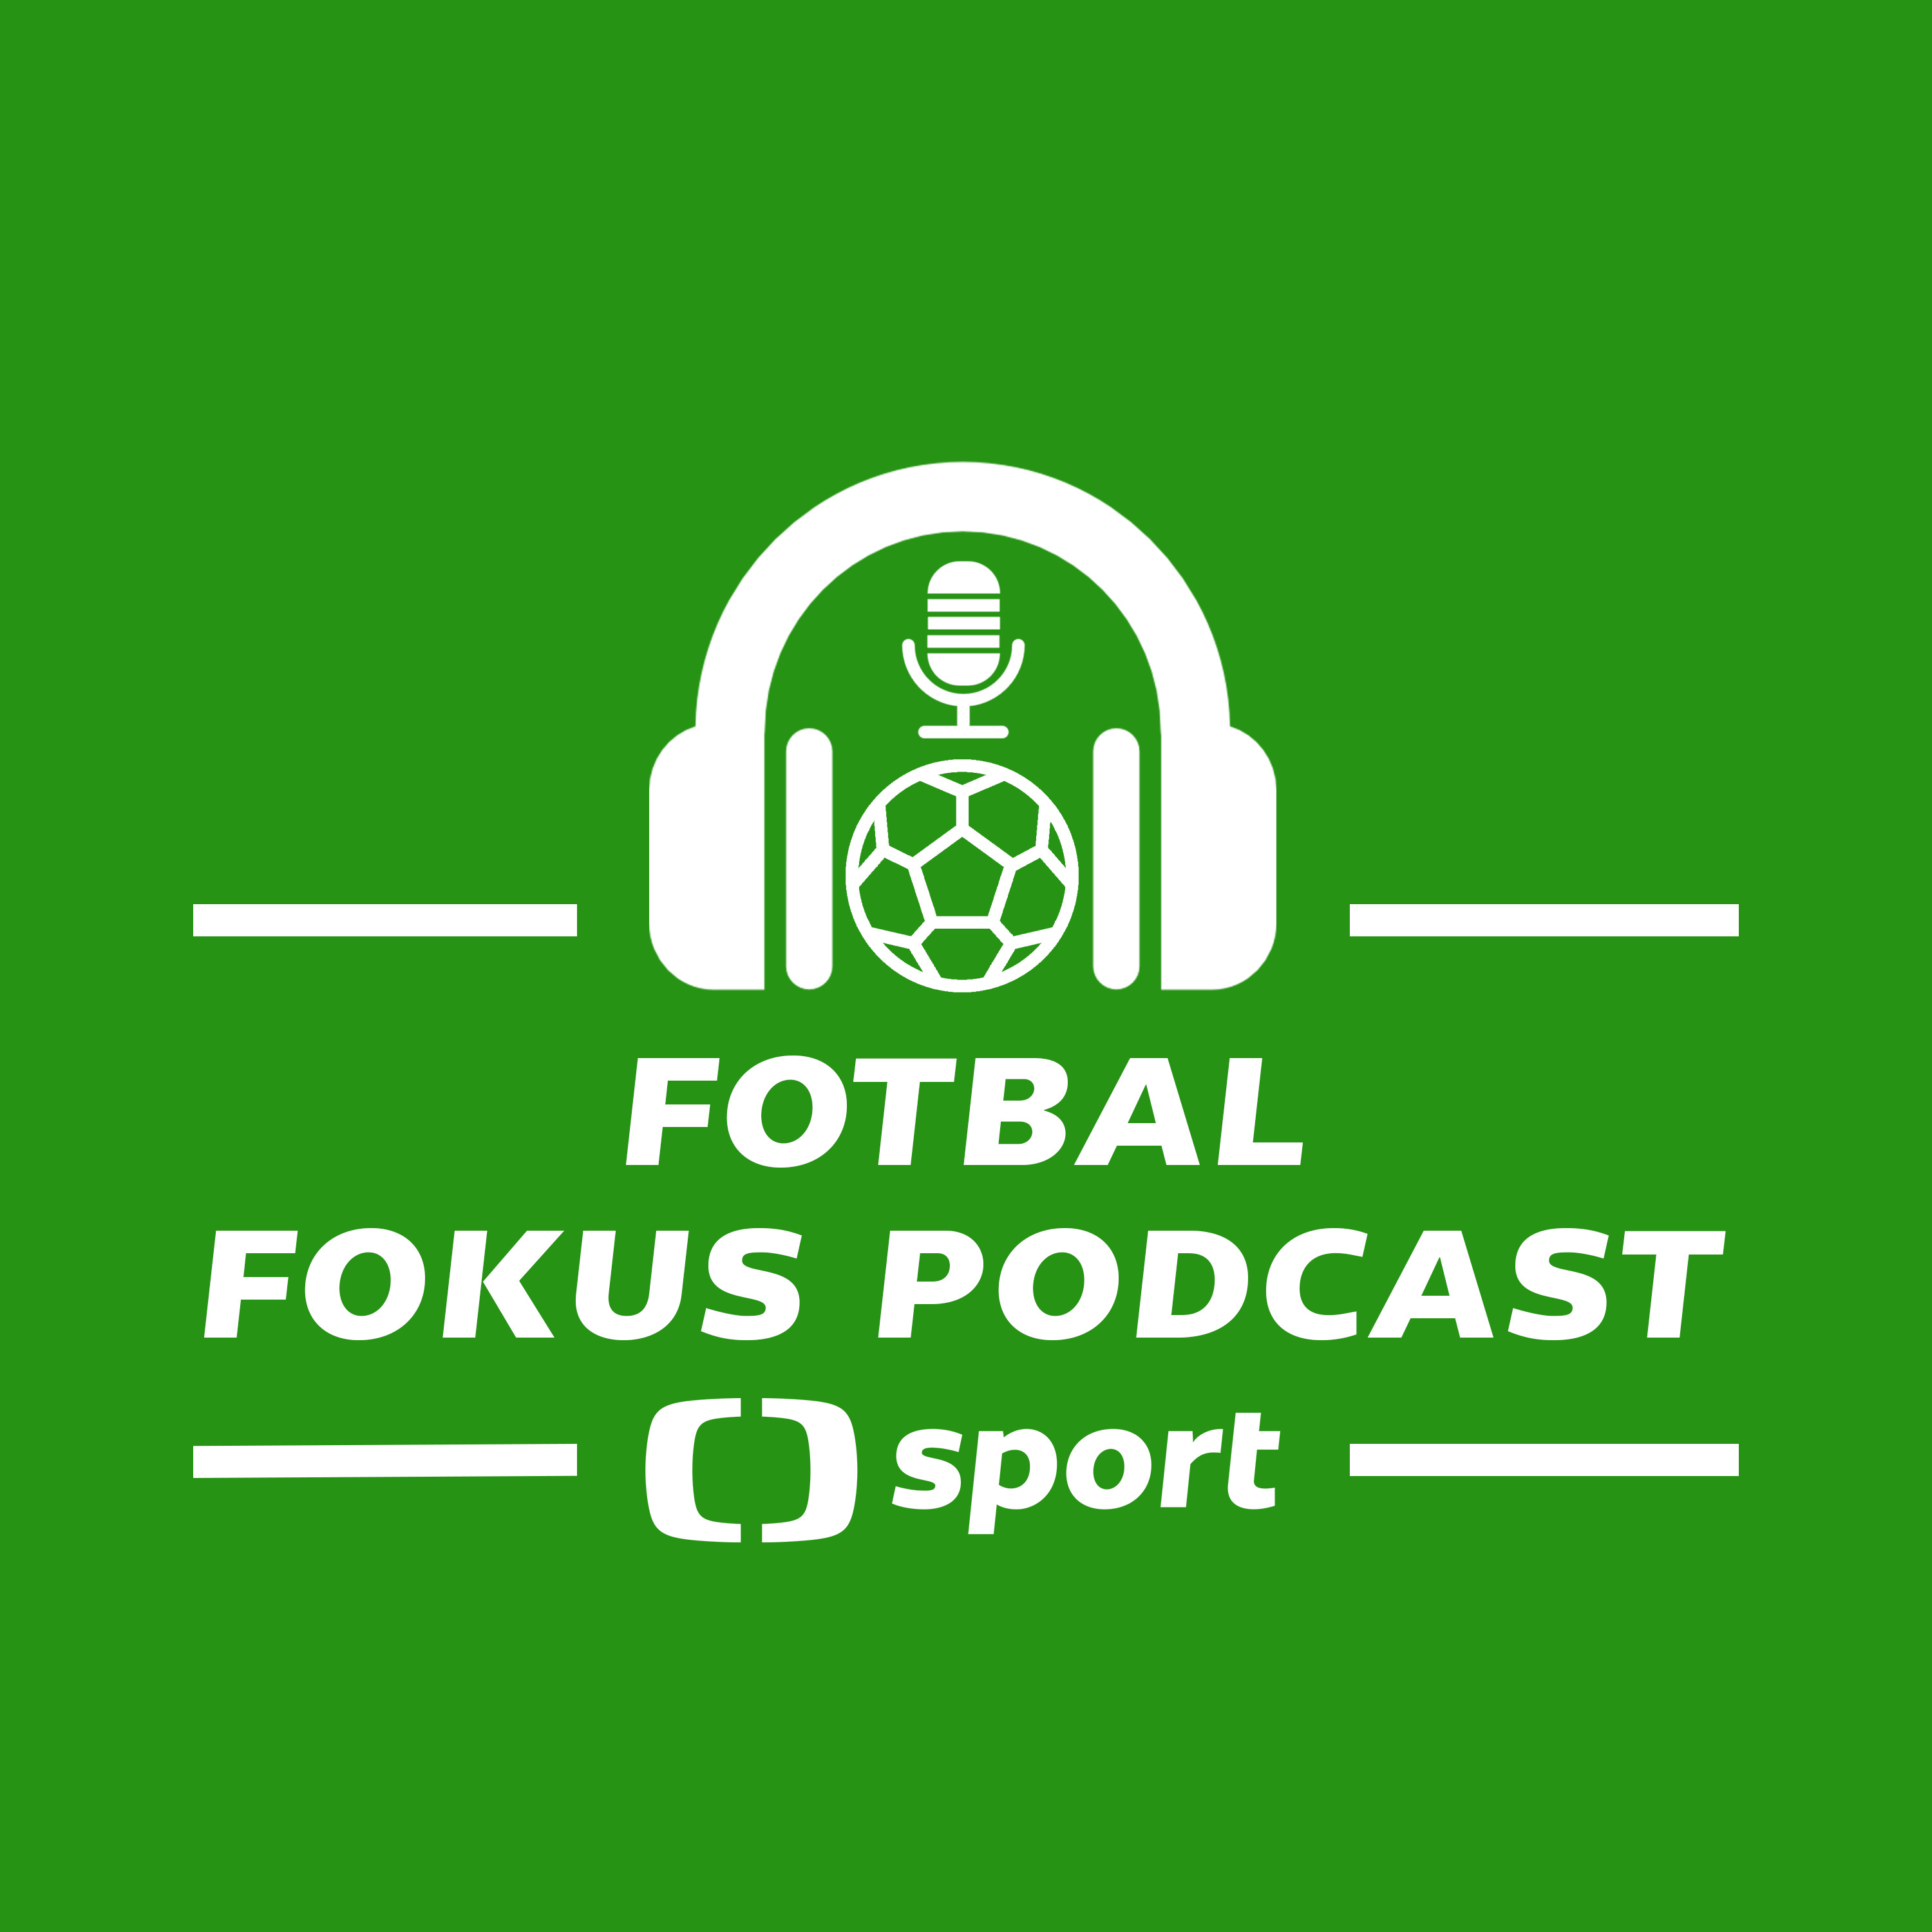 Fotbal fokus podcast: Slávistická lekce, Bucha do MLS, analytiky u repre